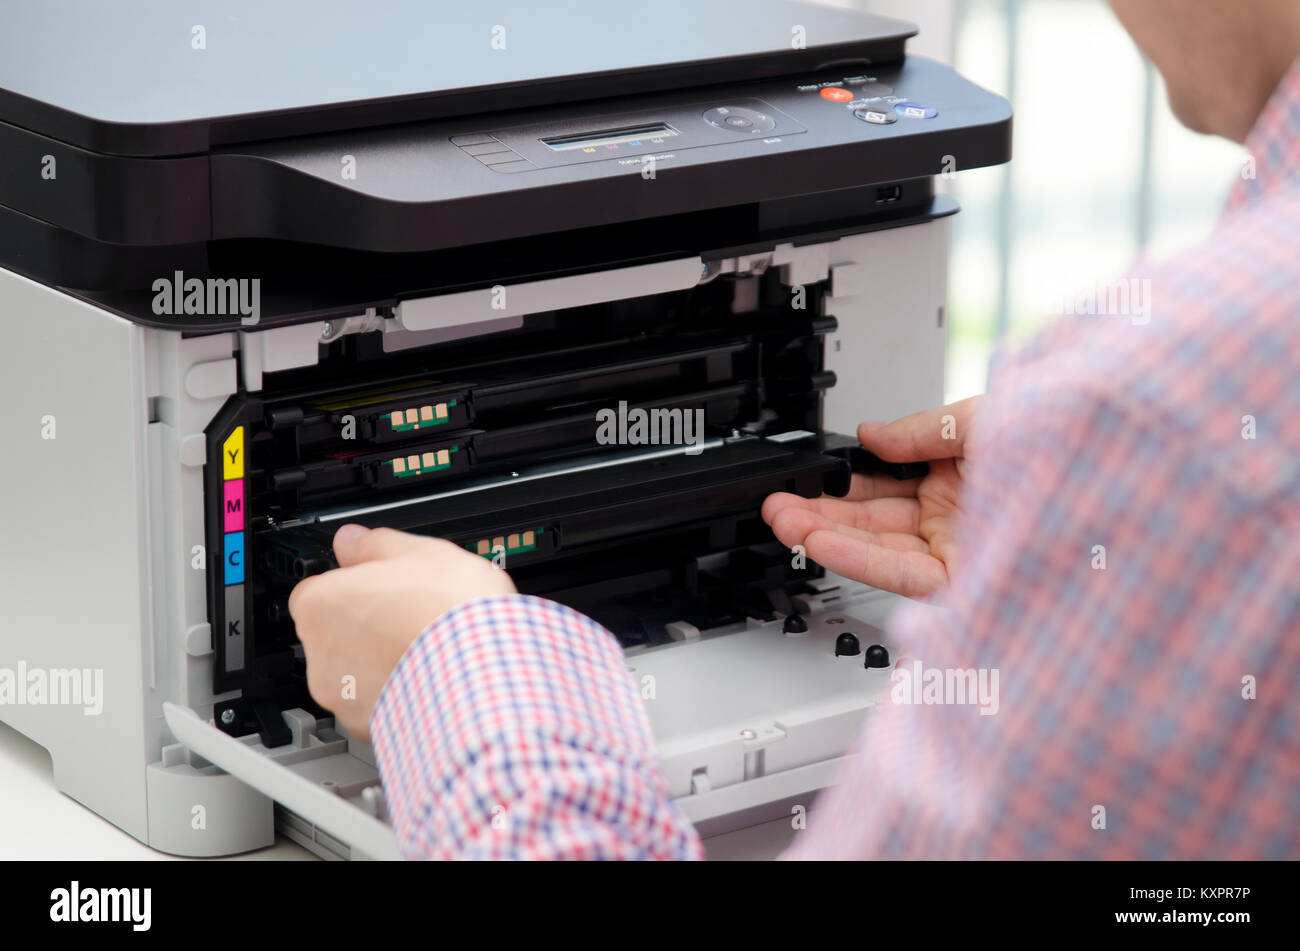 Mann ersetzt Toner für Laserdrucker Toner Drucker patrone Drucken Laser  Bürobedarf Konzept nachfüllen Stockfotografie - Alamy